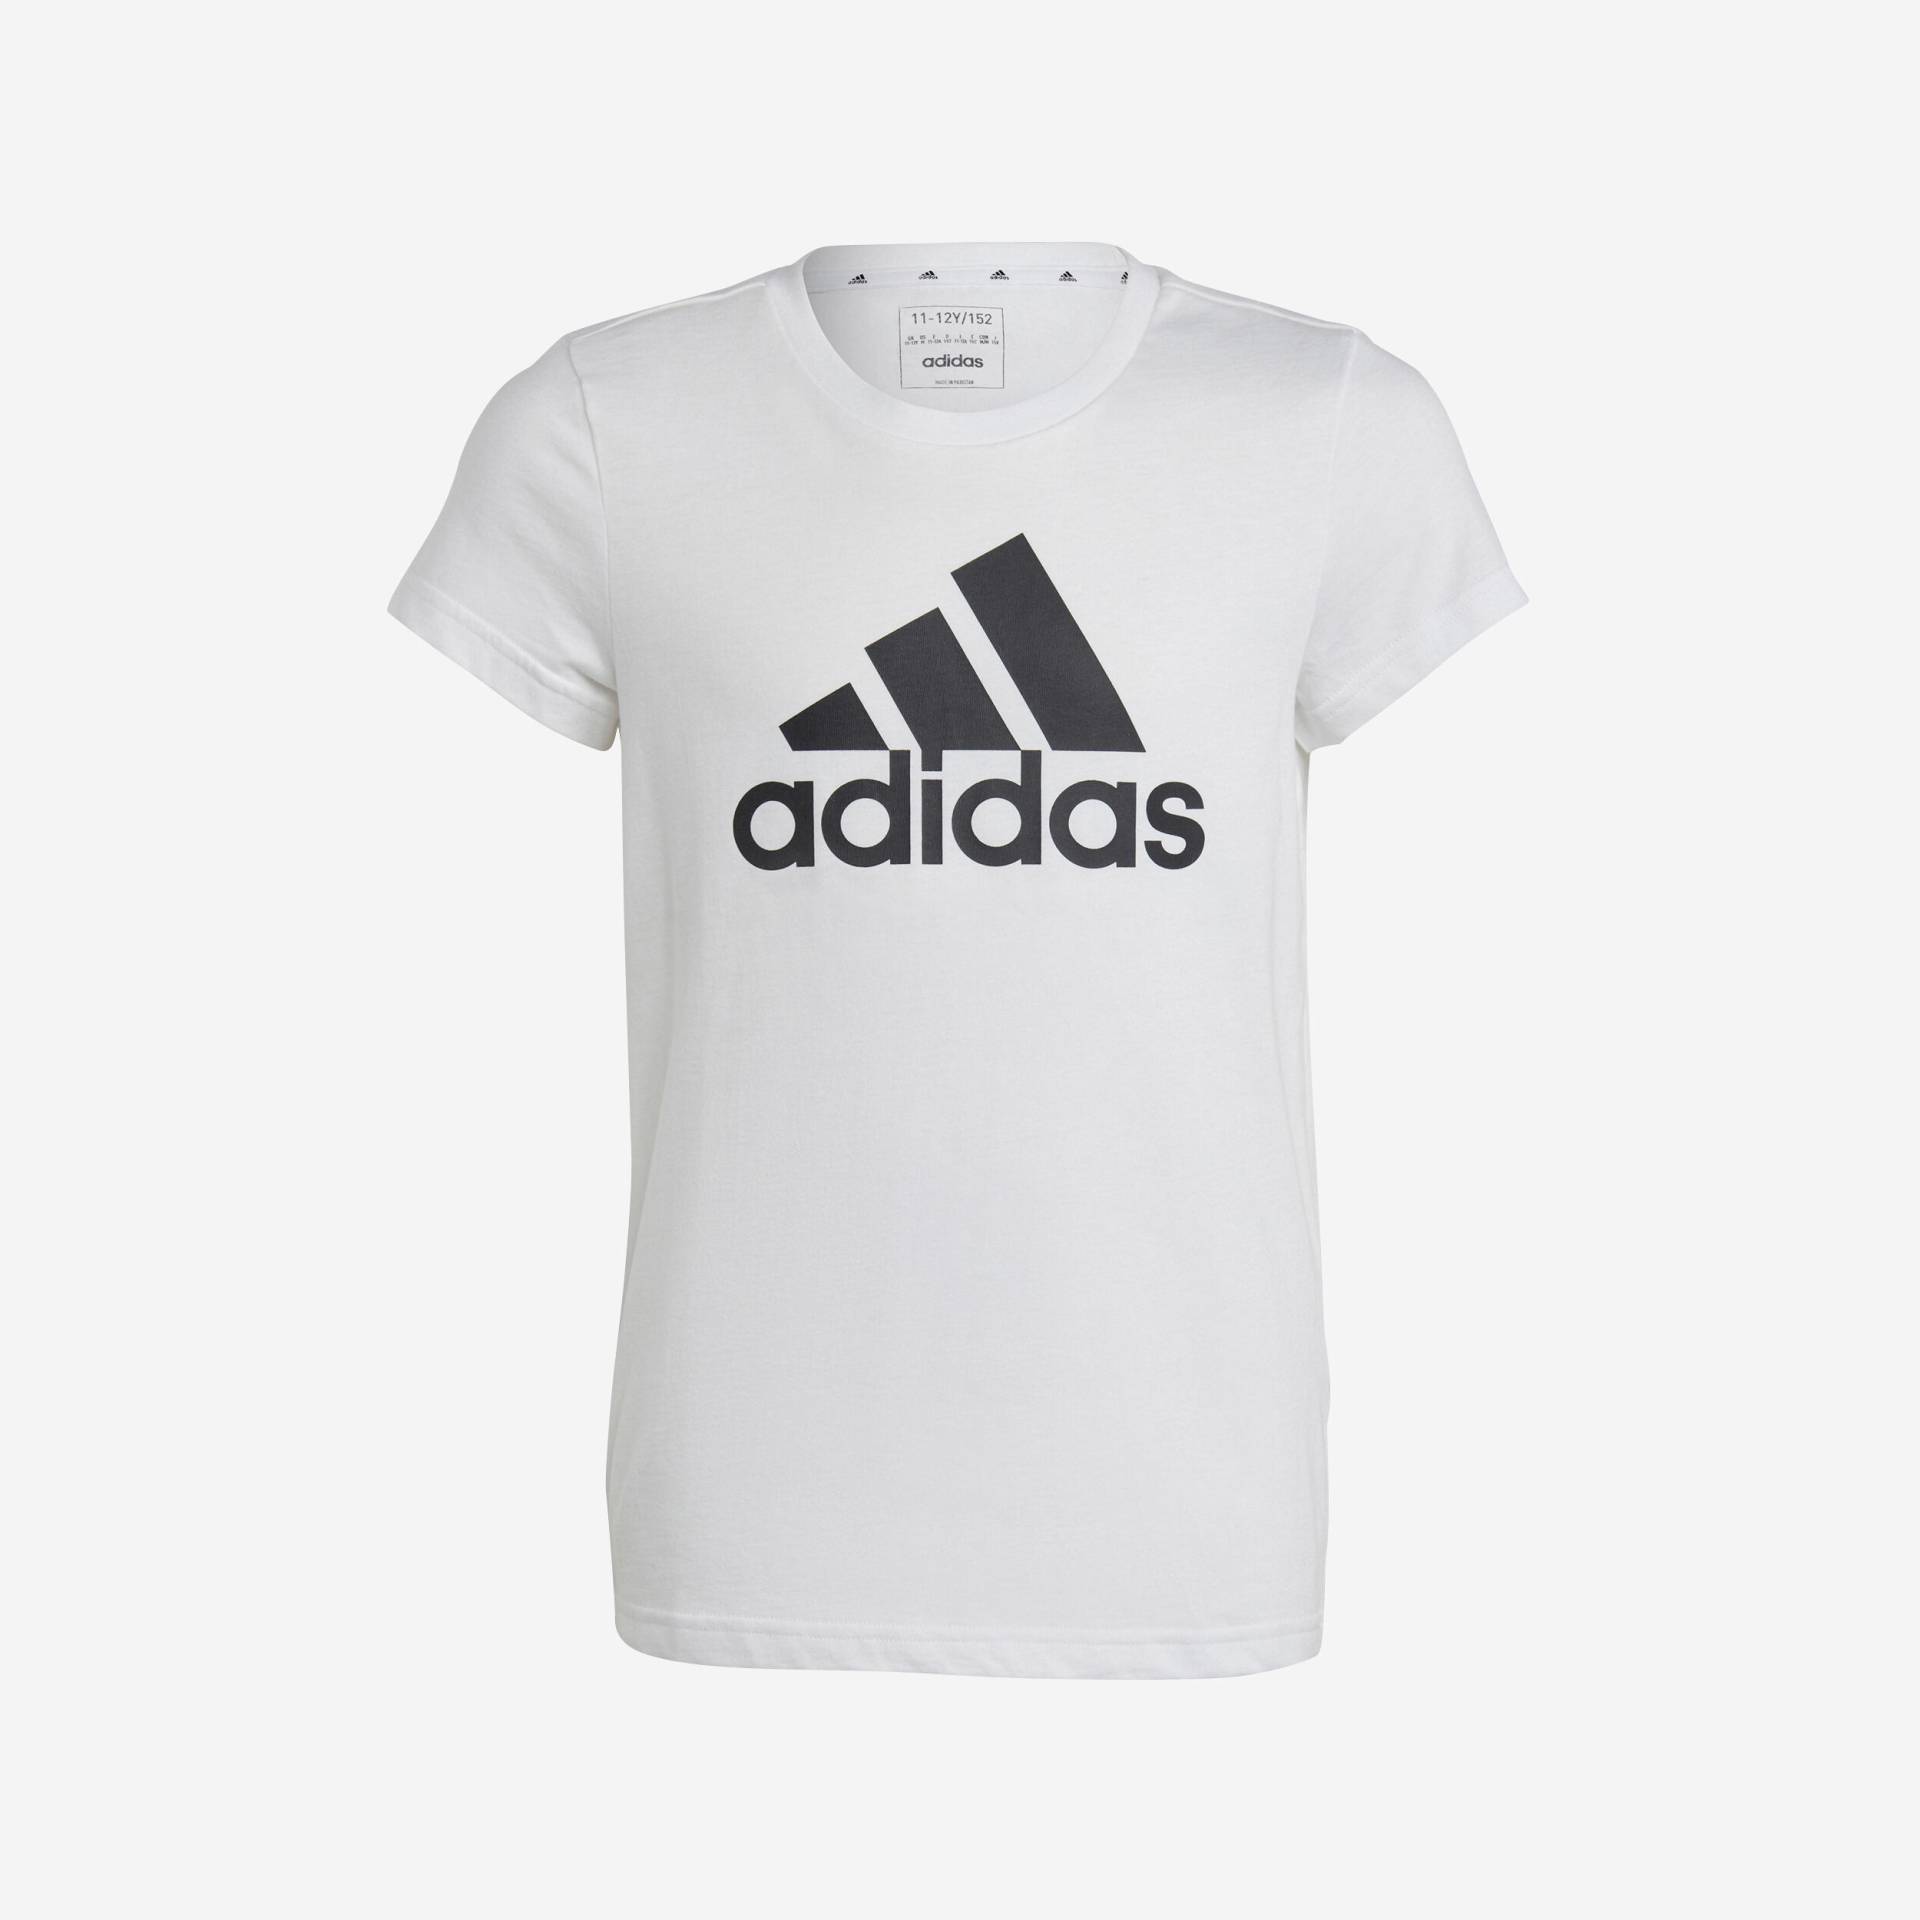 ADIDAS T-Shirt Mädchen - weiss mit schwarzem Logo von Adidas